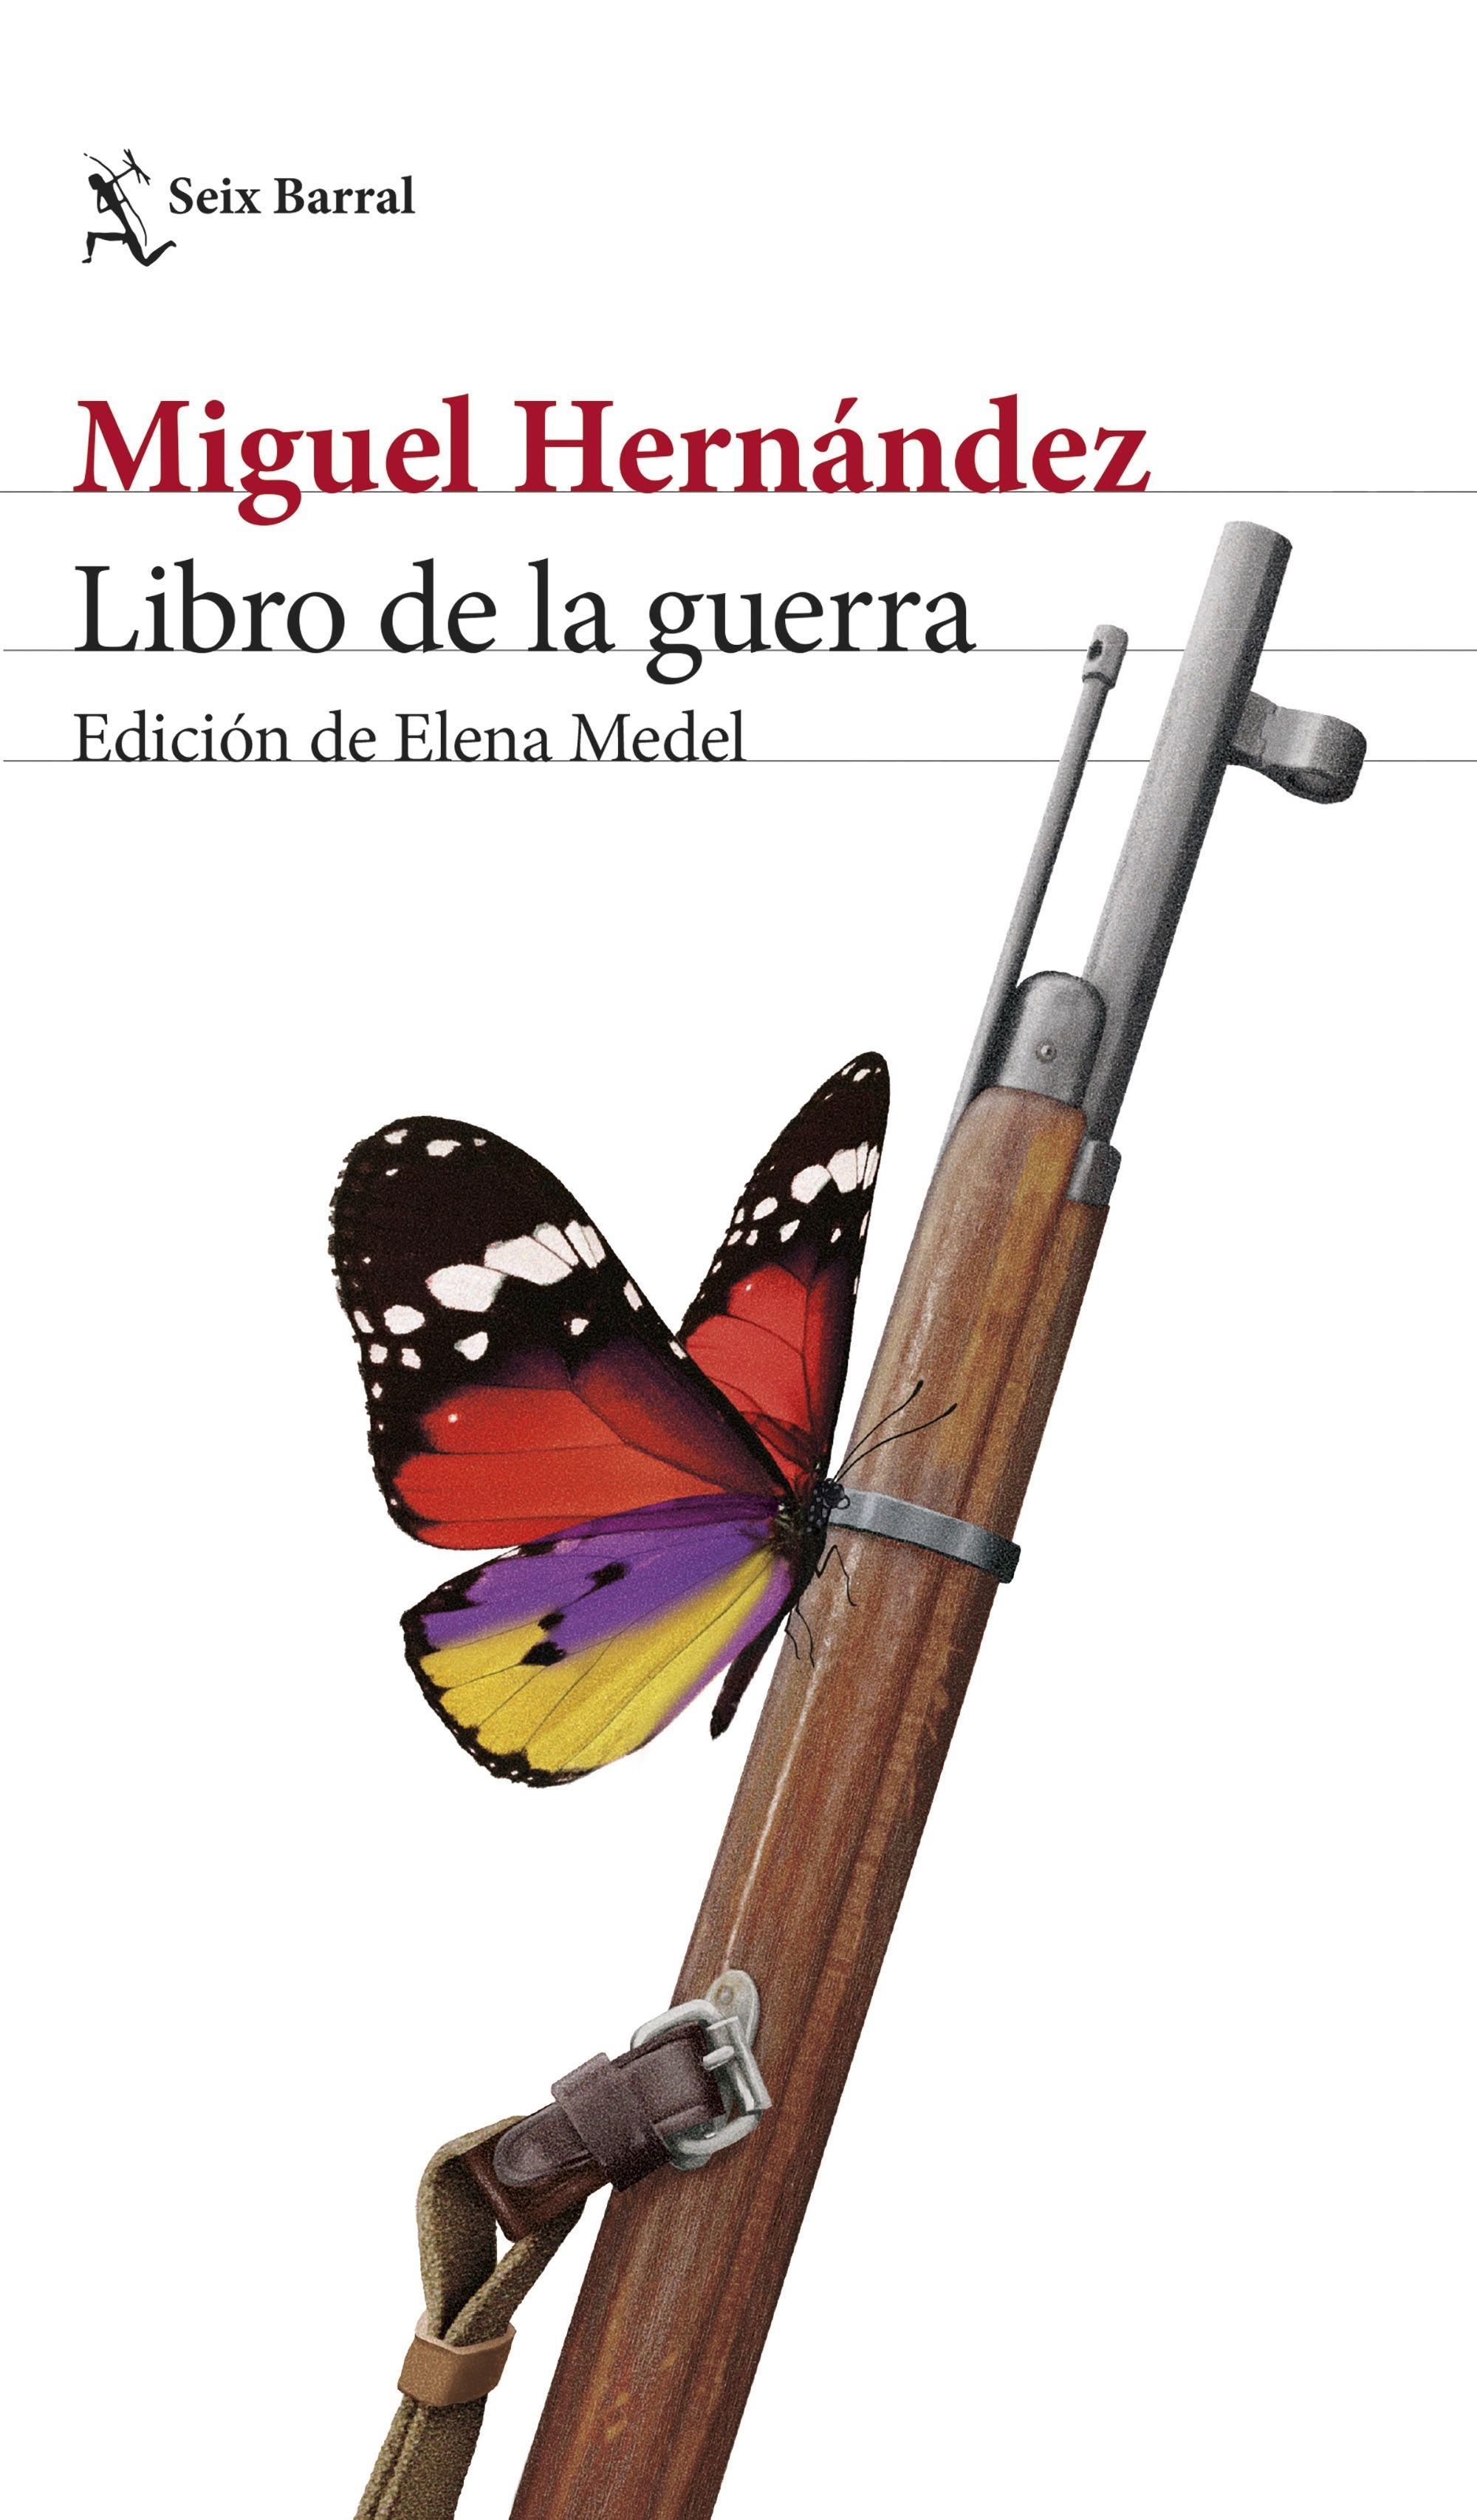 Libro de la Guerra "Edición de Elena Medel". 